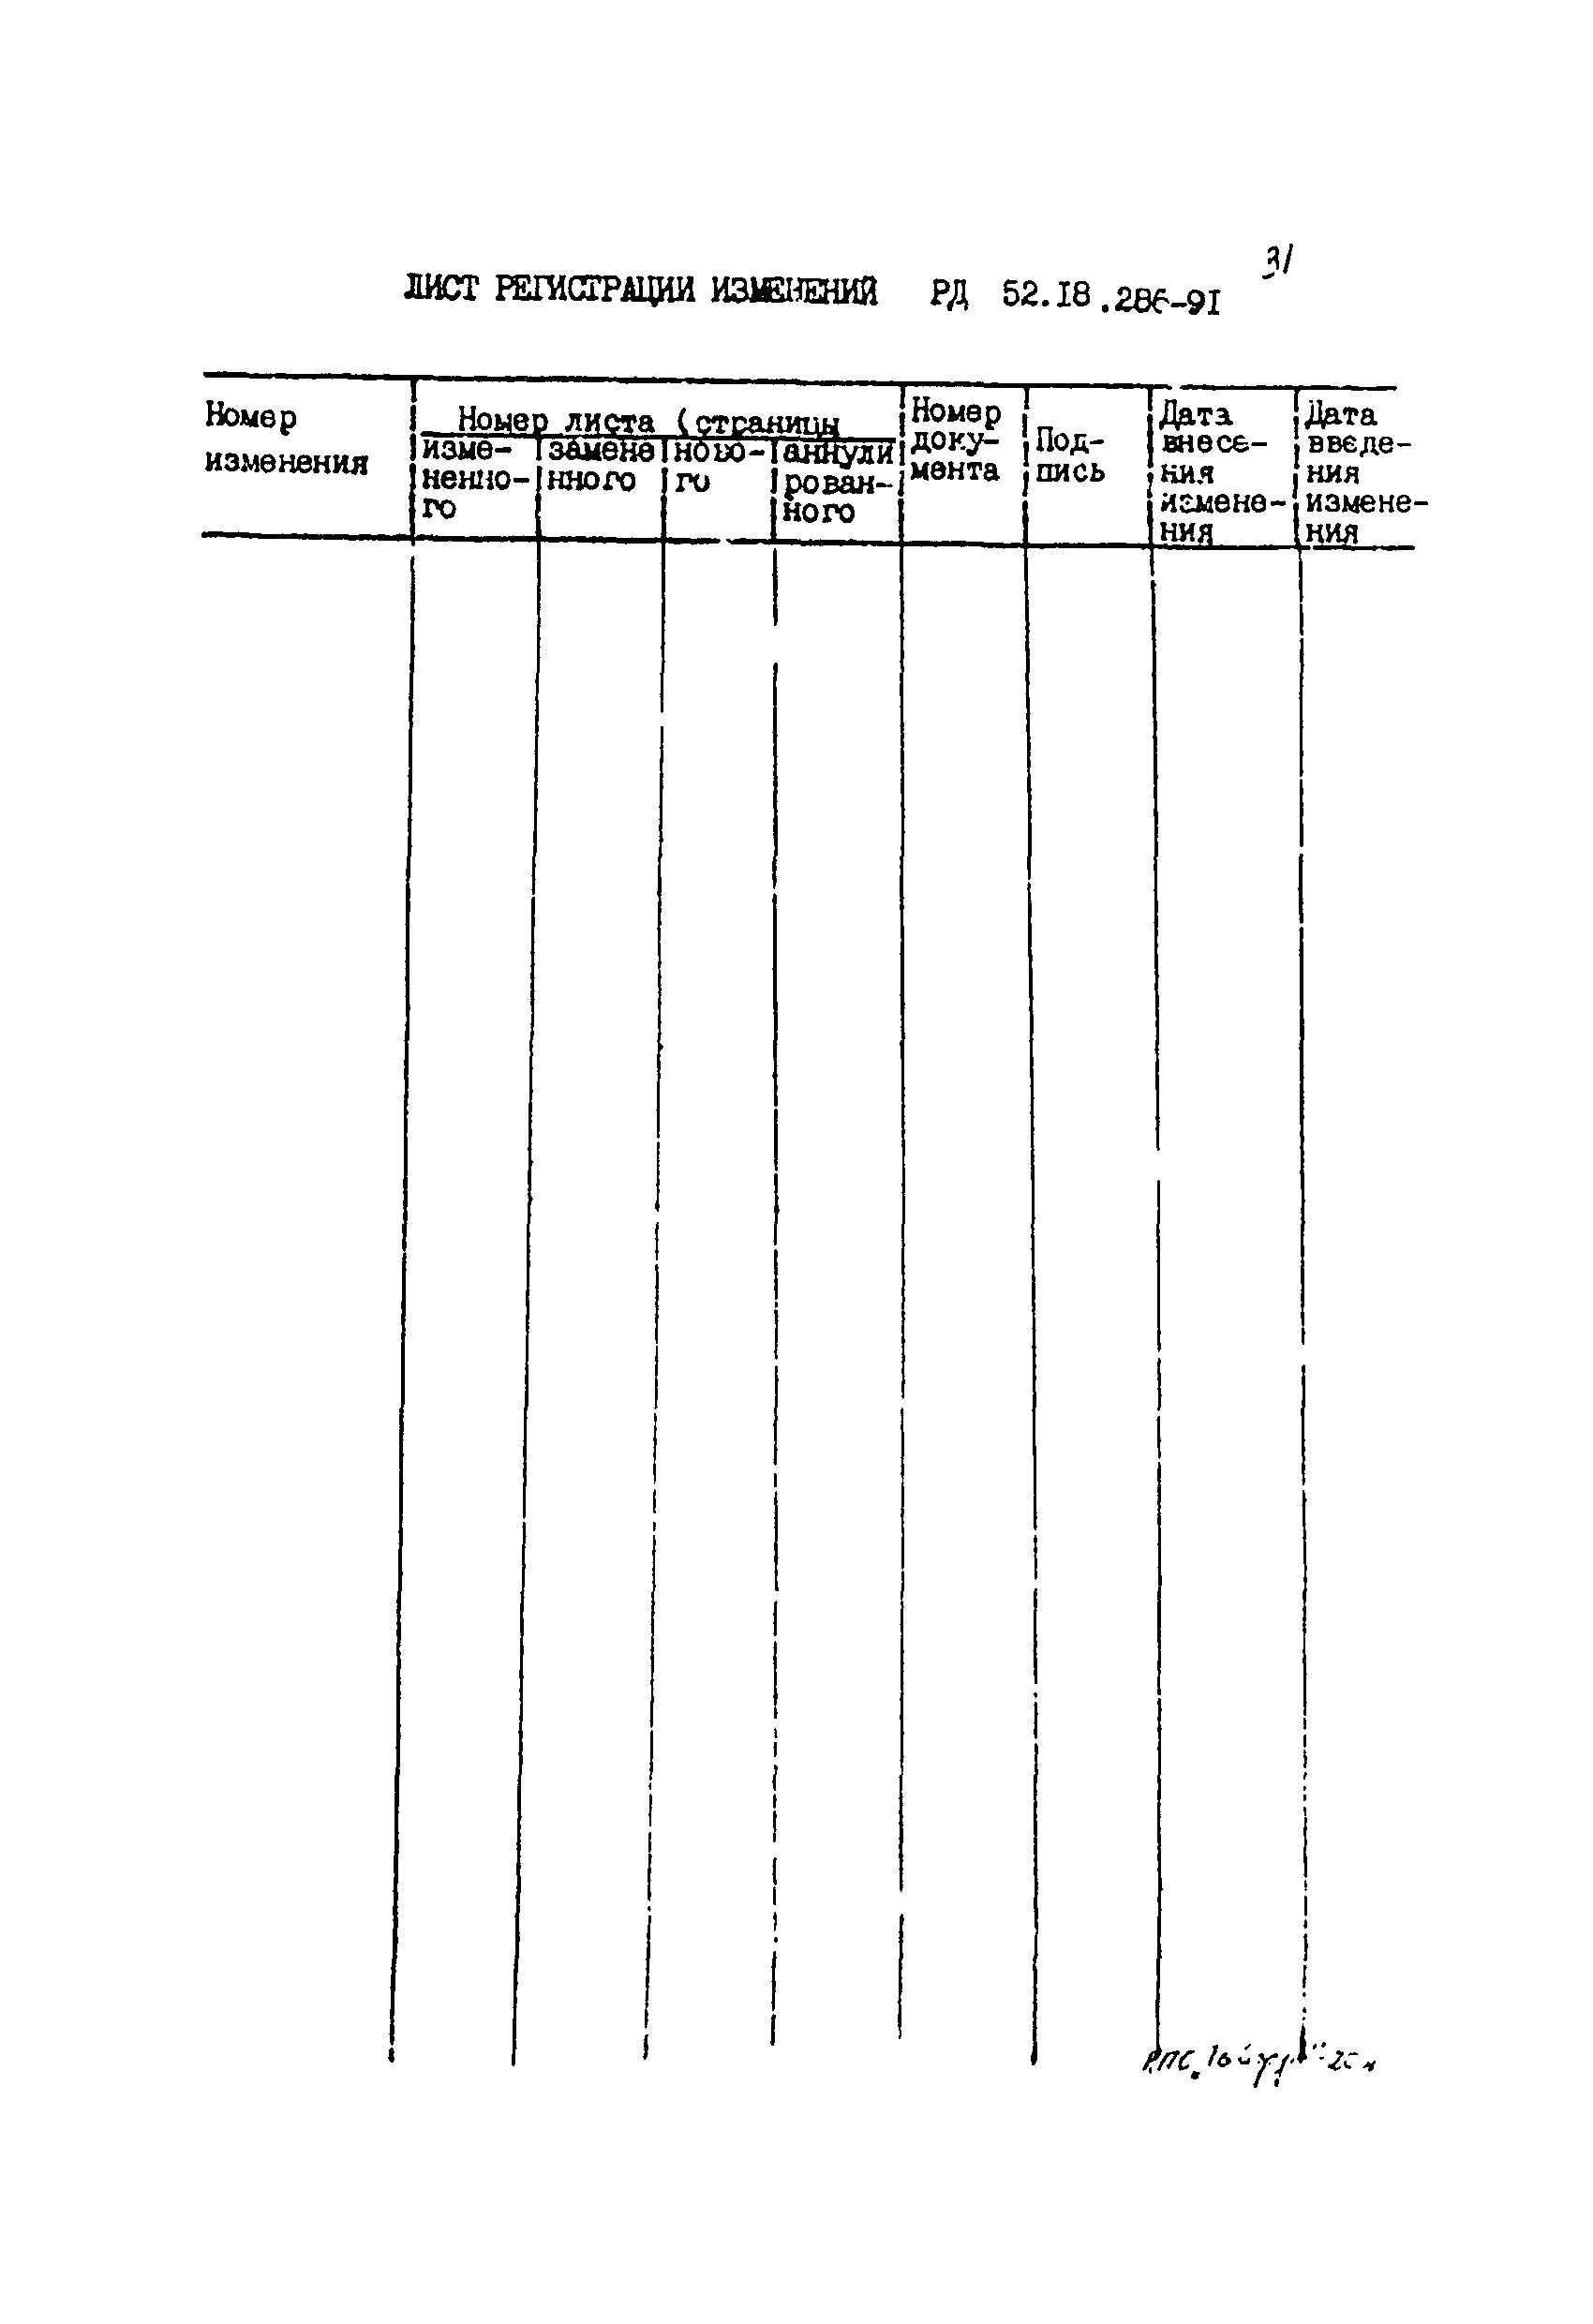 РД 52.18.286-91